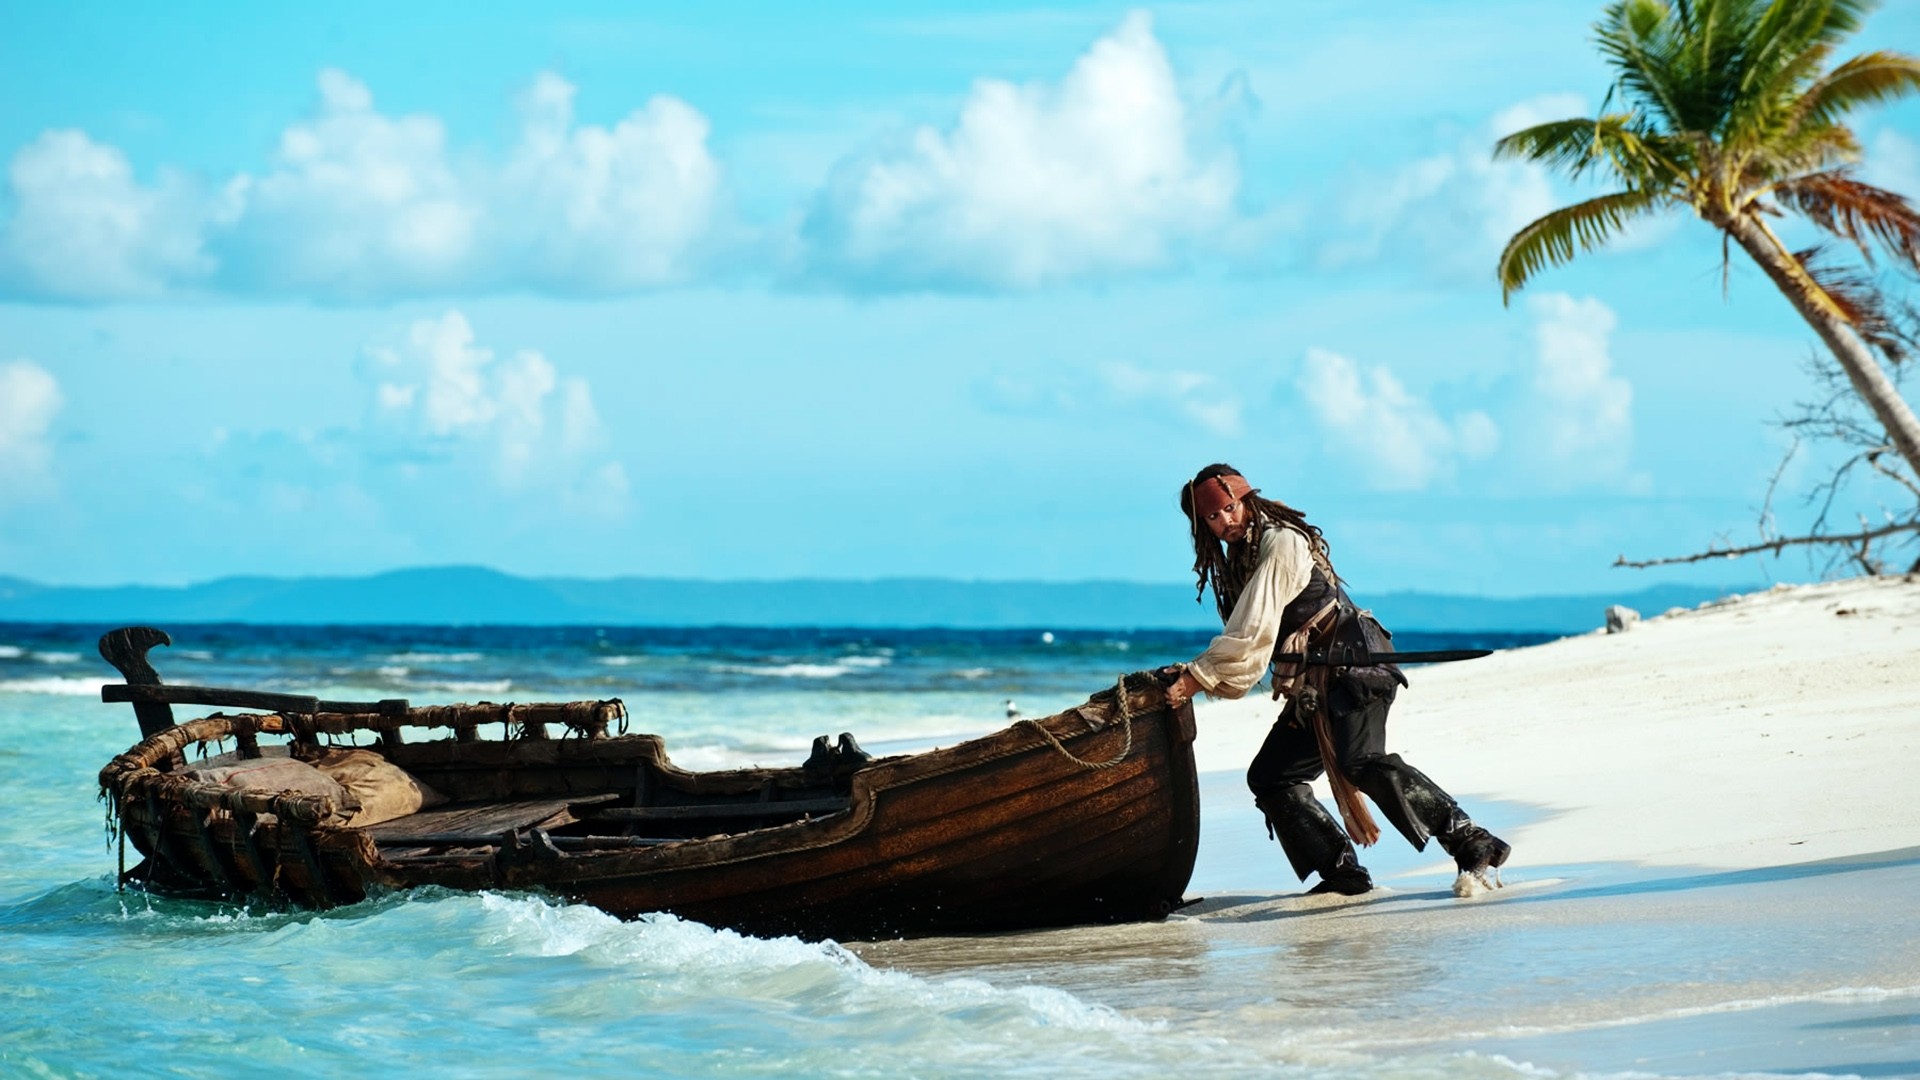 Джек Воробей выталкивает лодку в море из фильма «Пираты карибского моря»